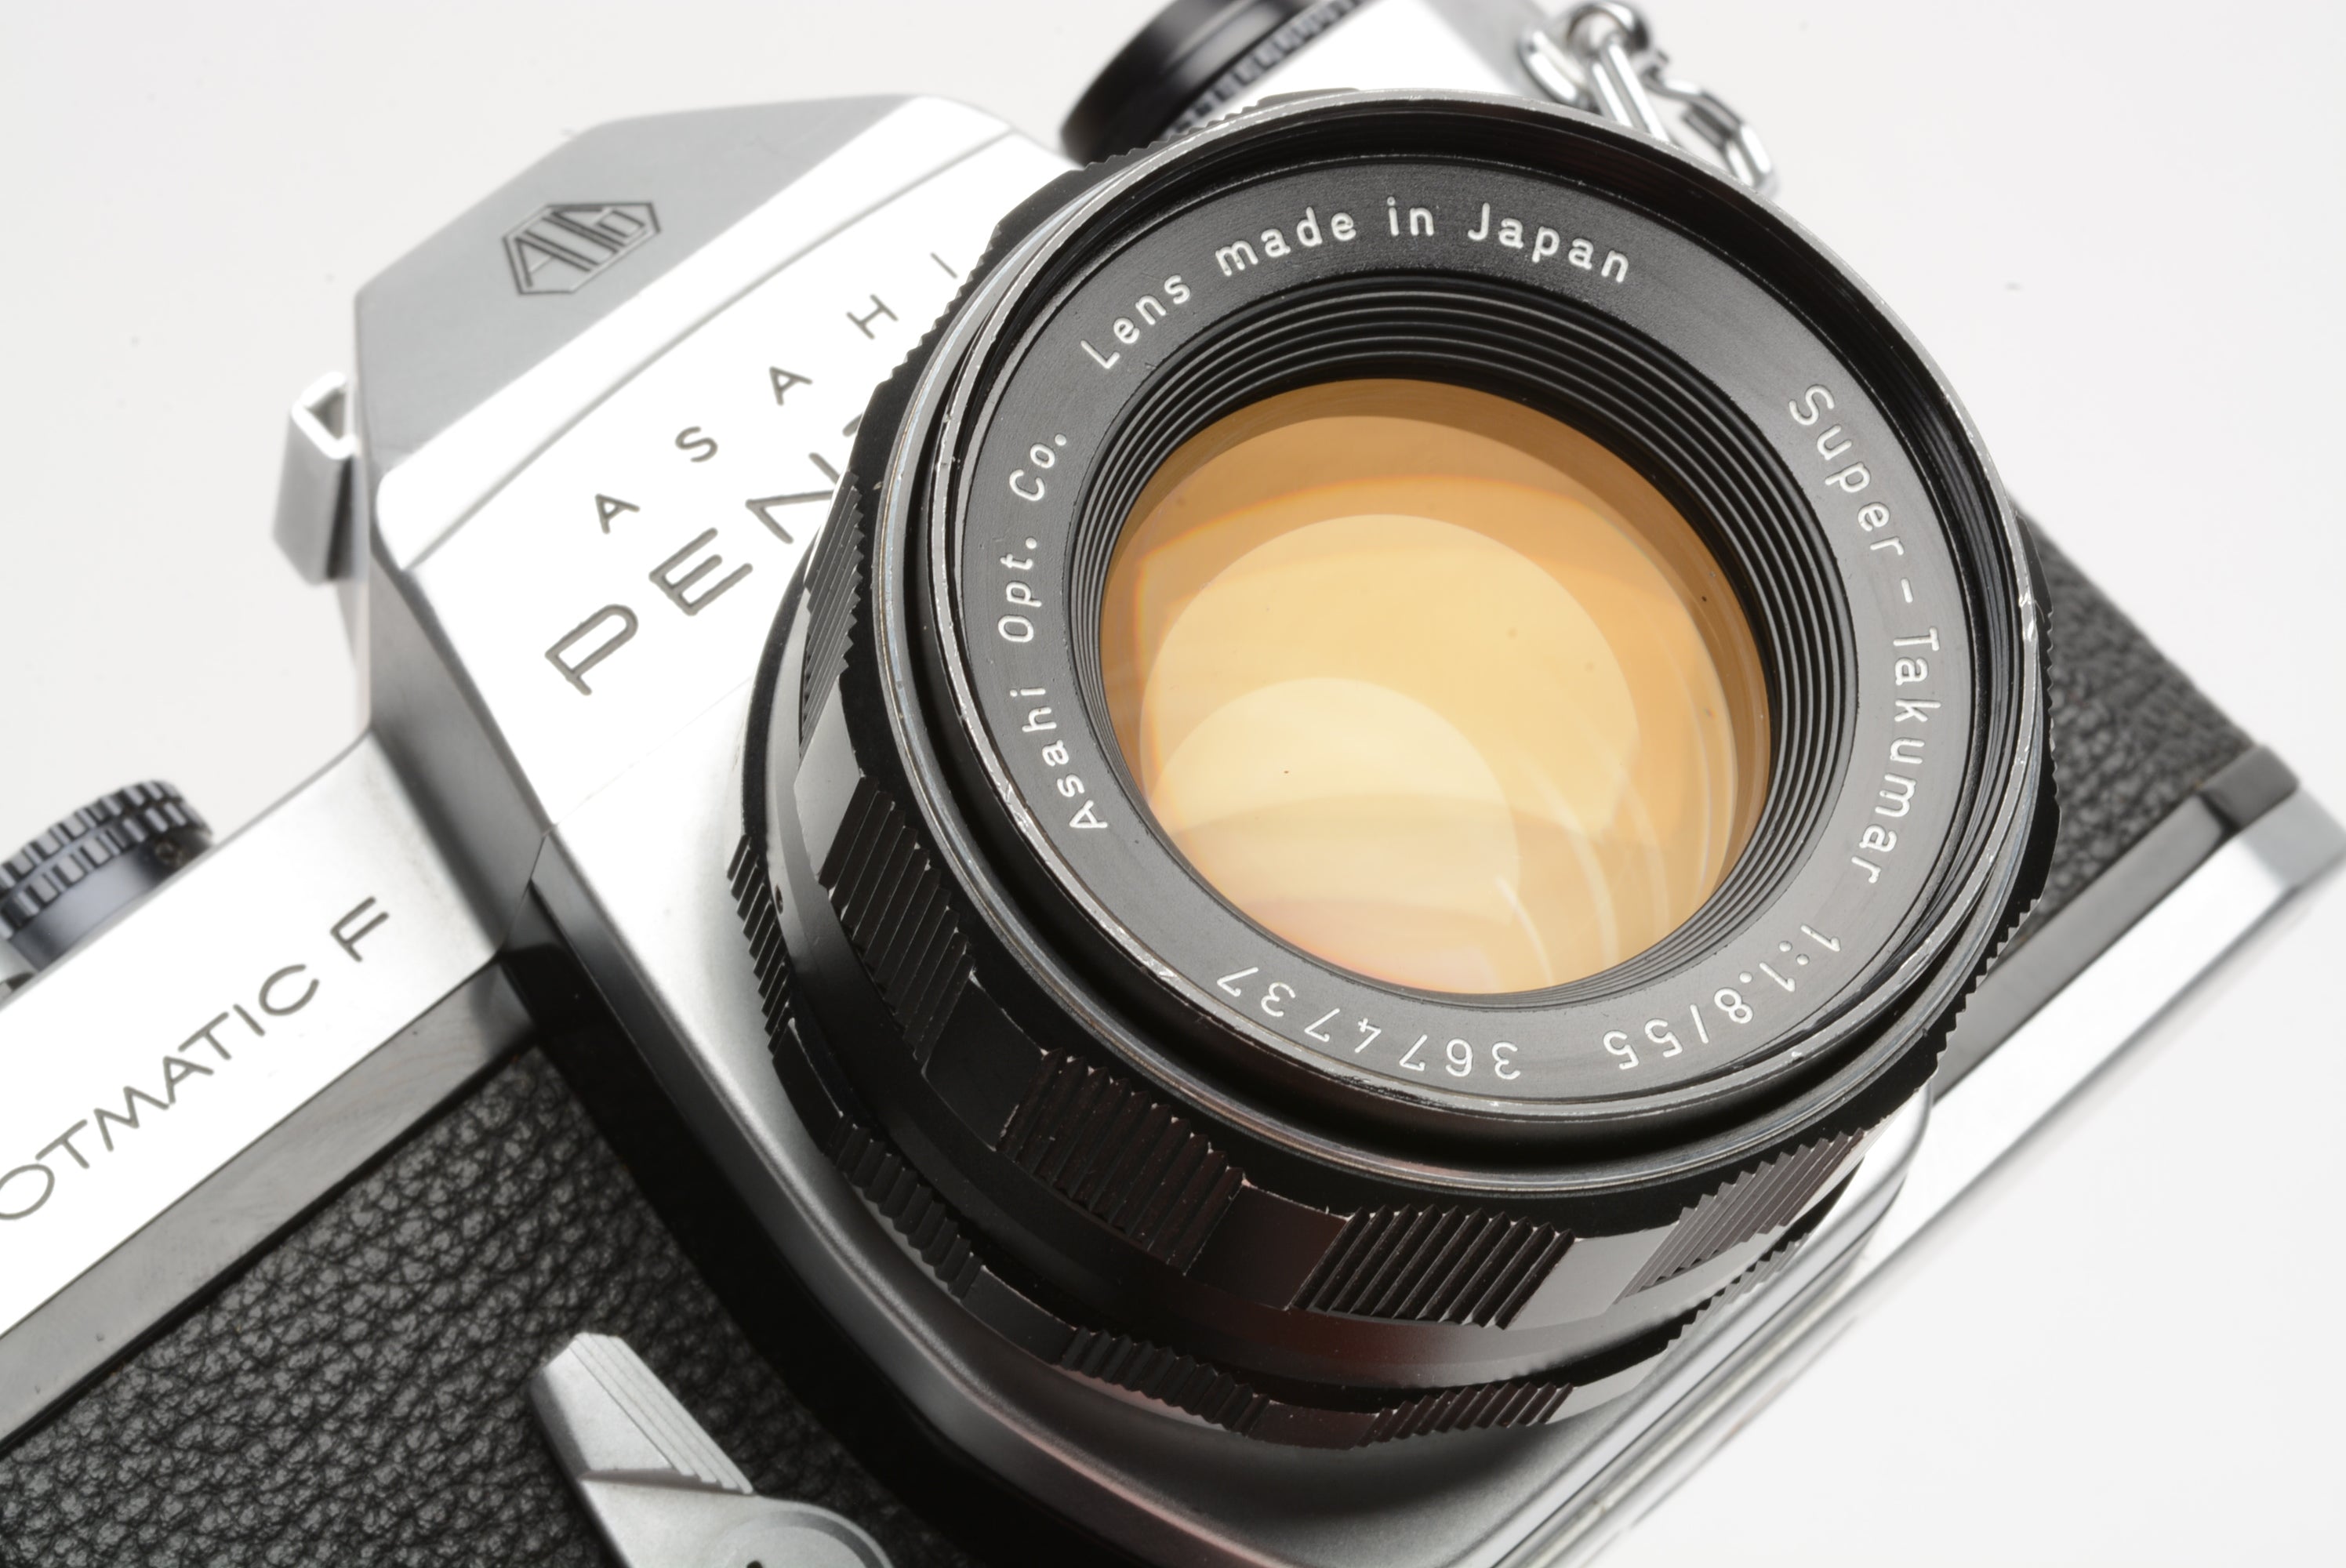 Pentax Spotmatic F SP F Chrome Body w/S. Takumar 55mm F1.8 lens, new seals,  Nice!